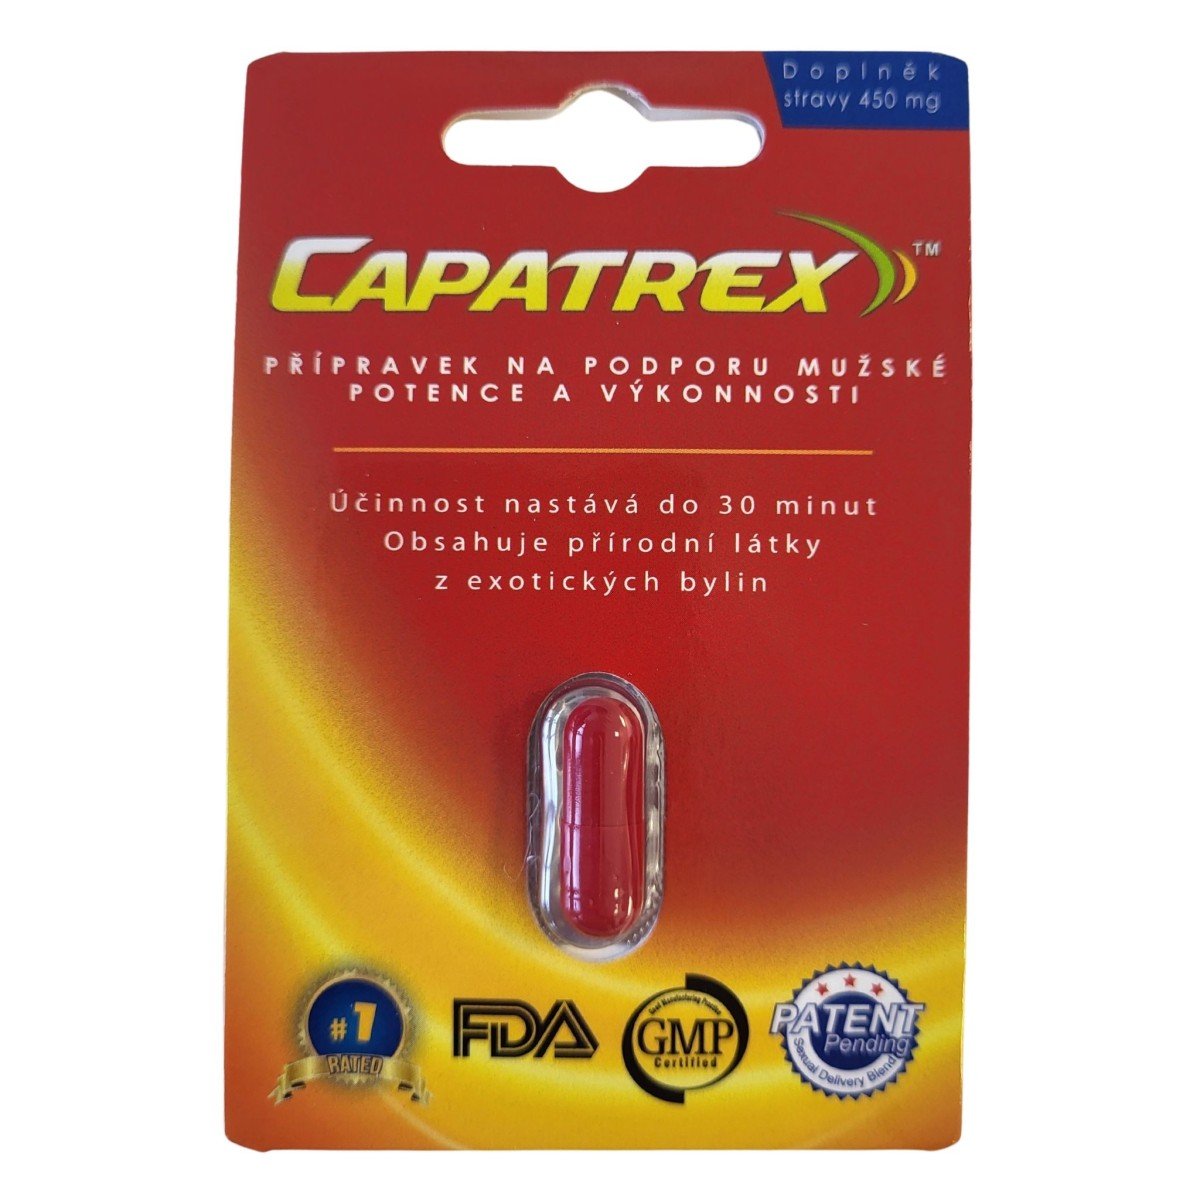 Capatrex 1 tobolka, rýchla podpora erekcie a zvýšenie libida